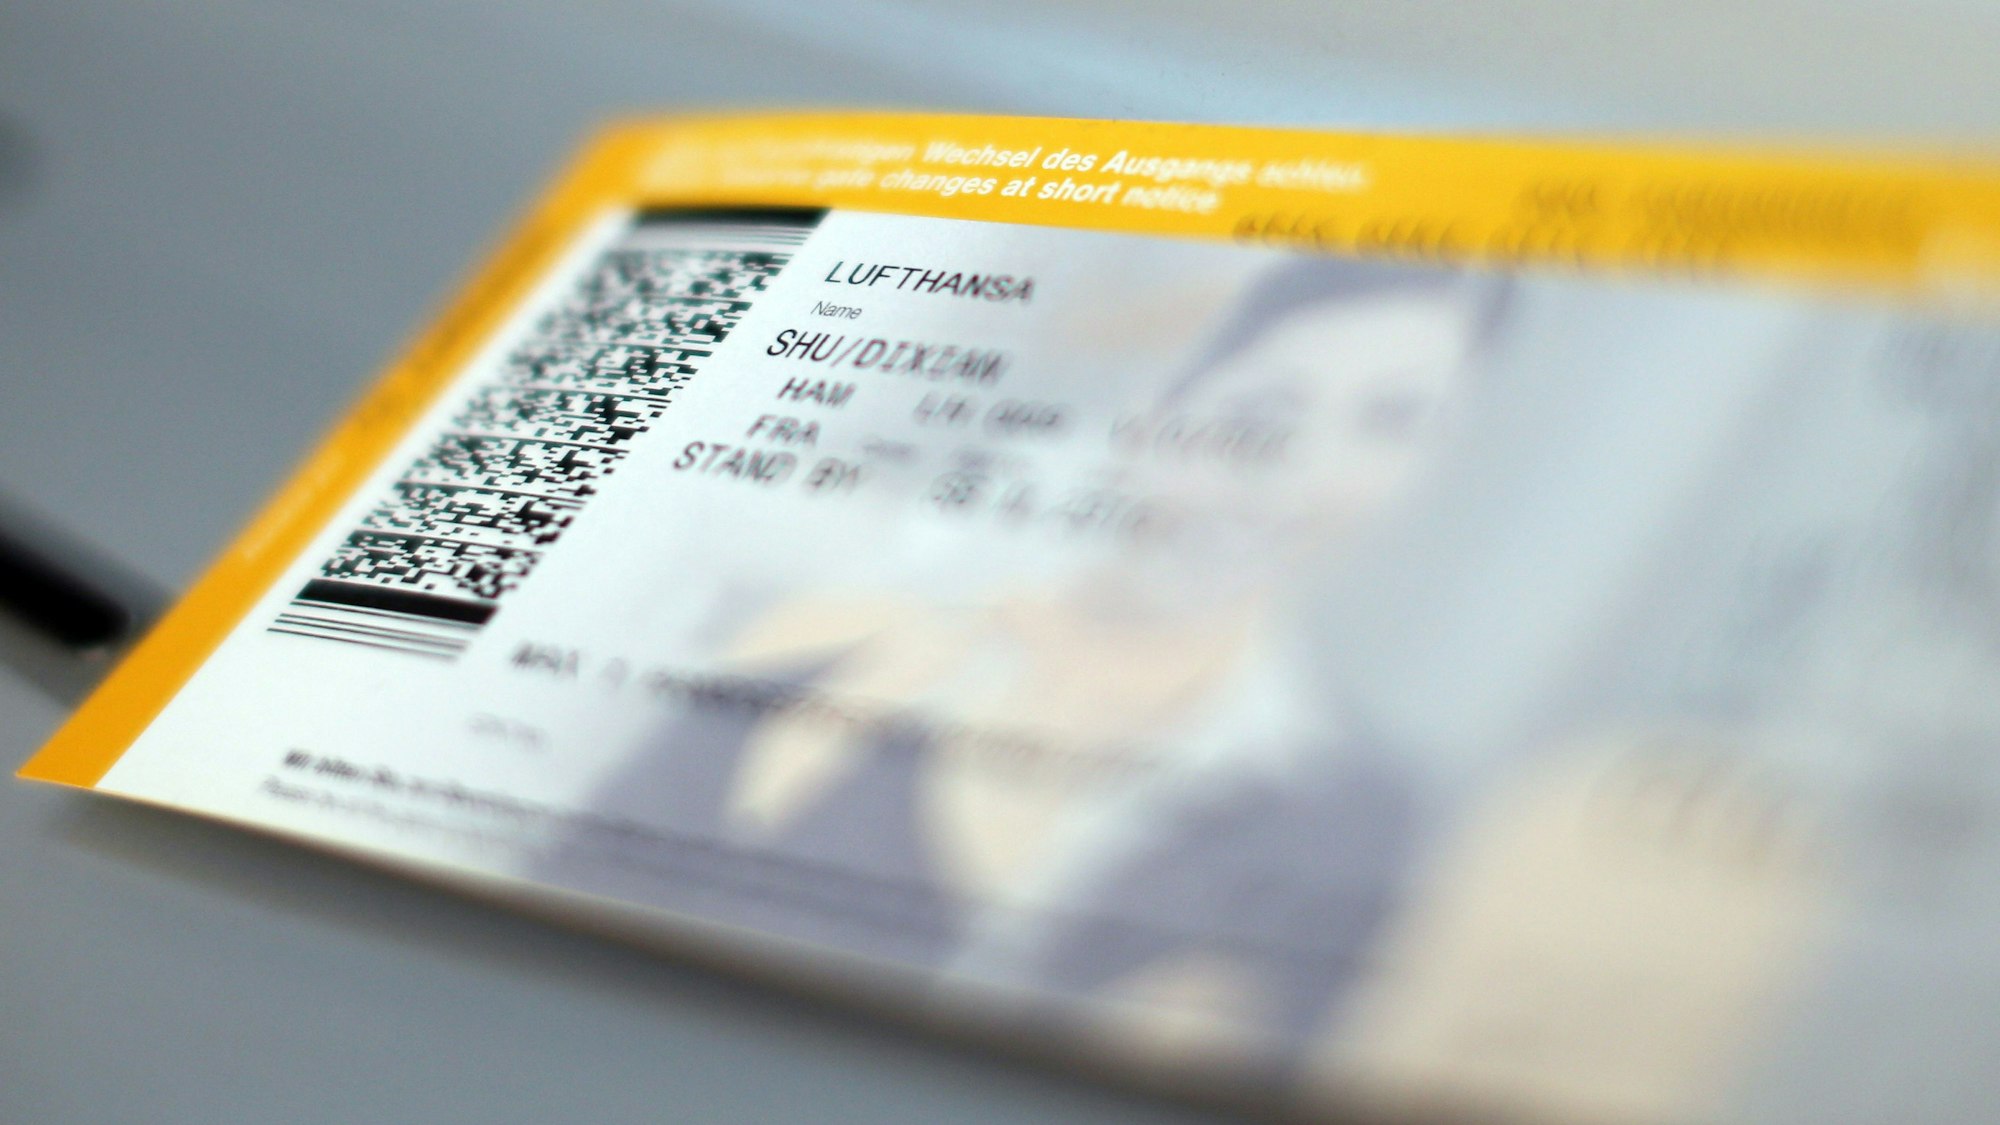 Auf dem Bild ist ein Ticket der Fluggesellschaft Lufthansa abgebildet.